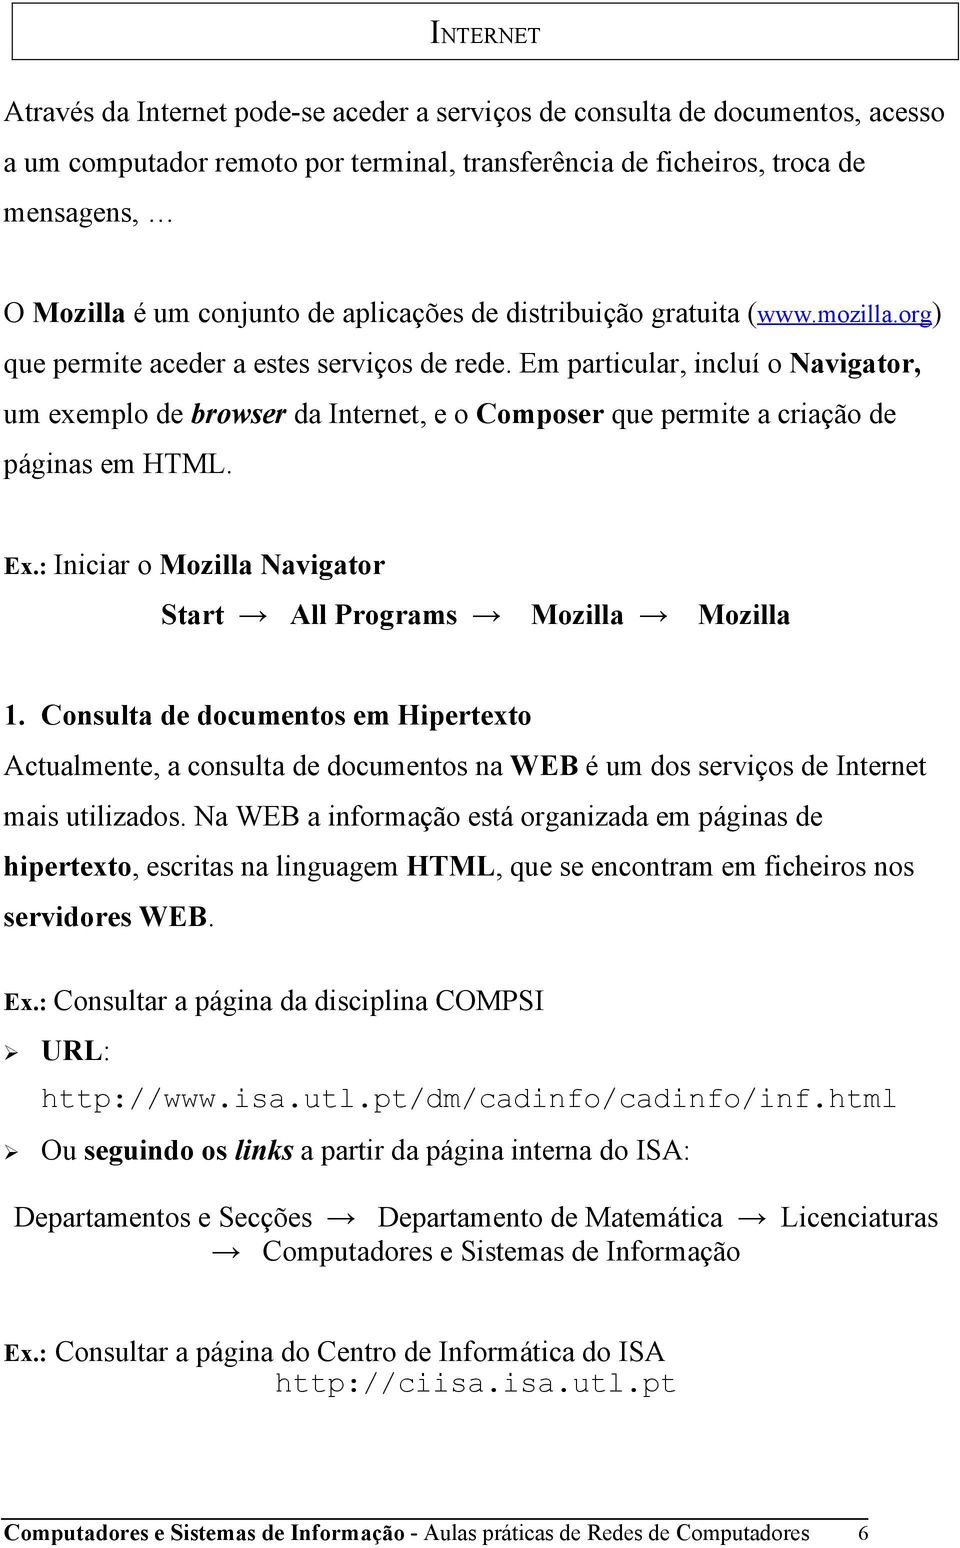 Em particular, incluí o Navigator, um exemplo de browser da Internet, e o Composer que permite a criação de páginas em HTML. Ex.: Iniciar o Mozilla Navigator Start All Programs Mozilla Mozilla 1.